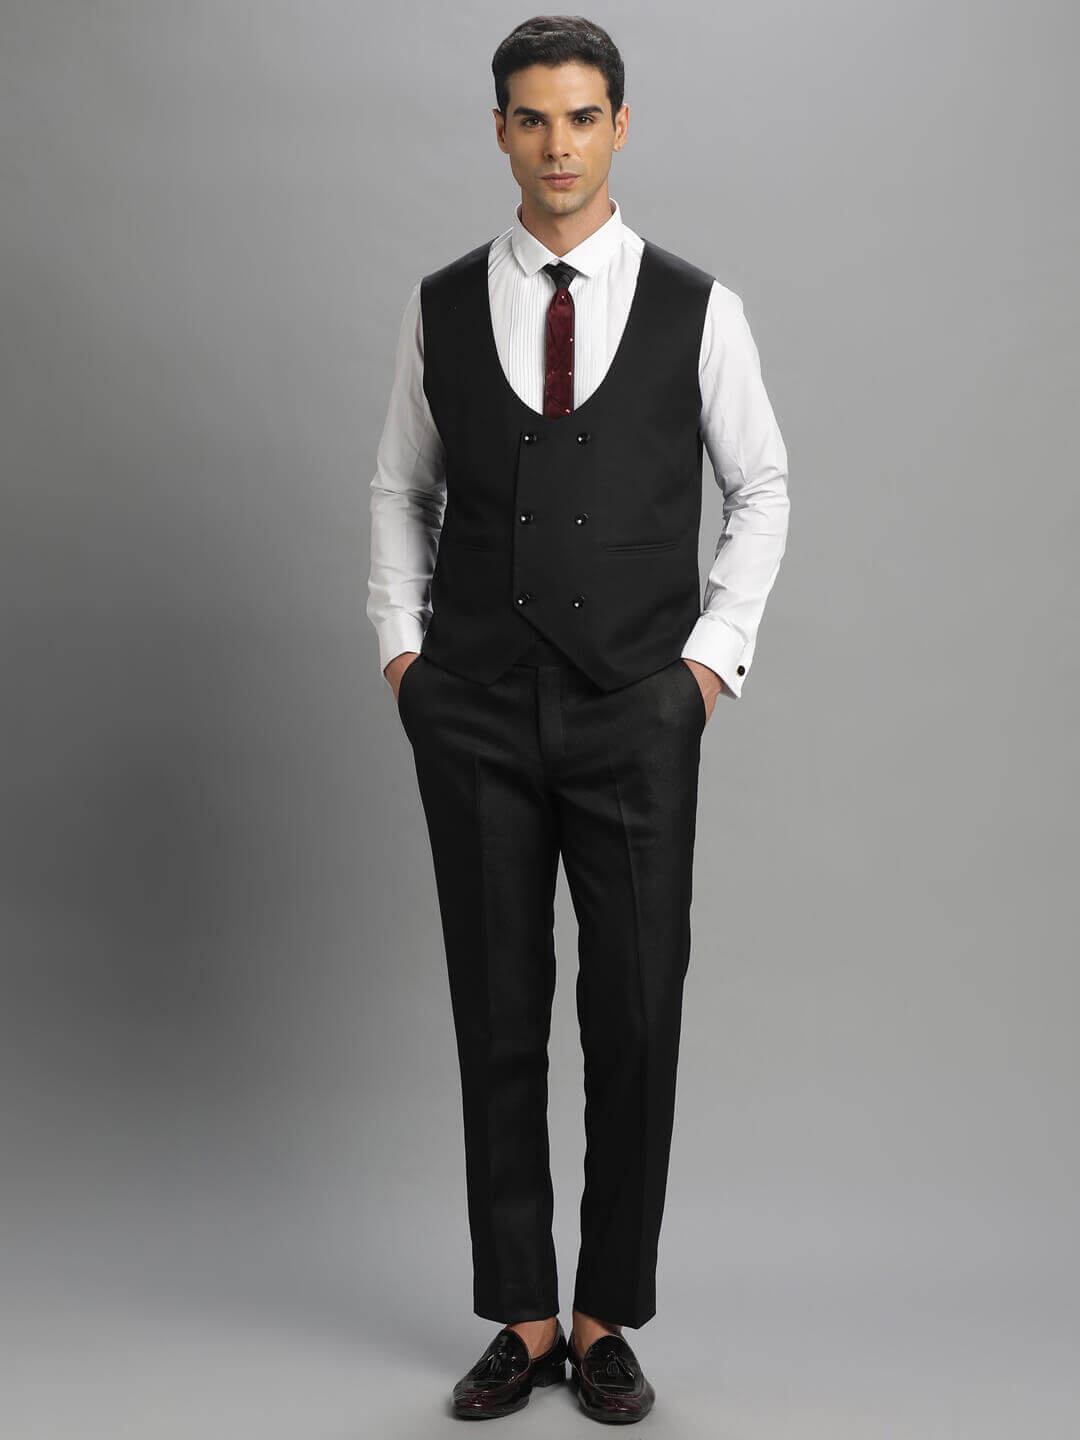 Candidmen: Rent / Buy - Subtle Black 3 Piece Suit